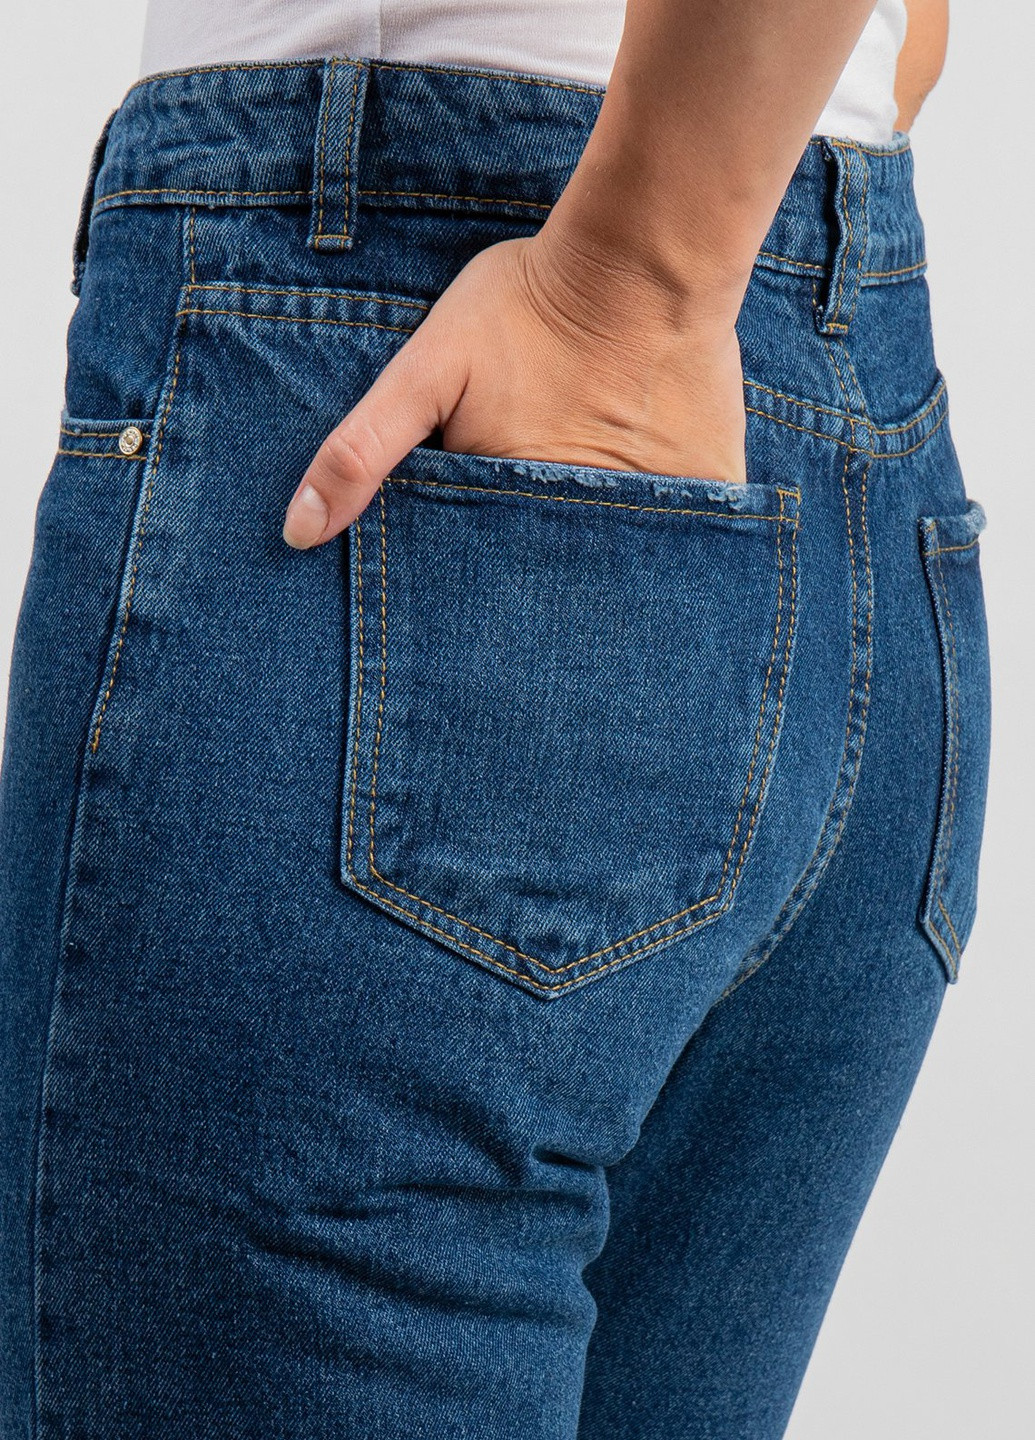 Синие укороченные джинсы QUERMES - (242106806)